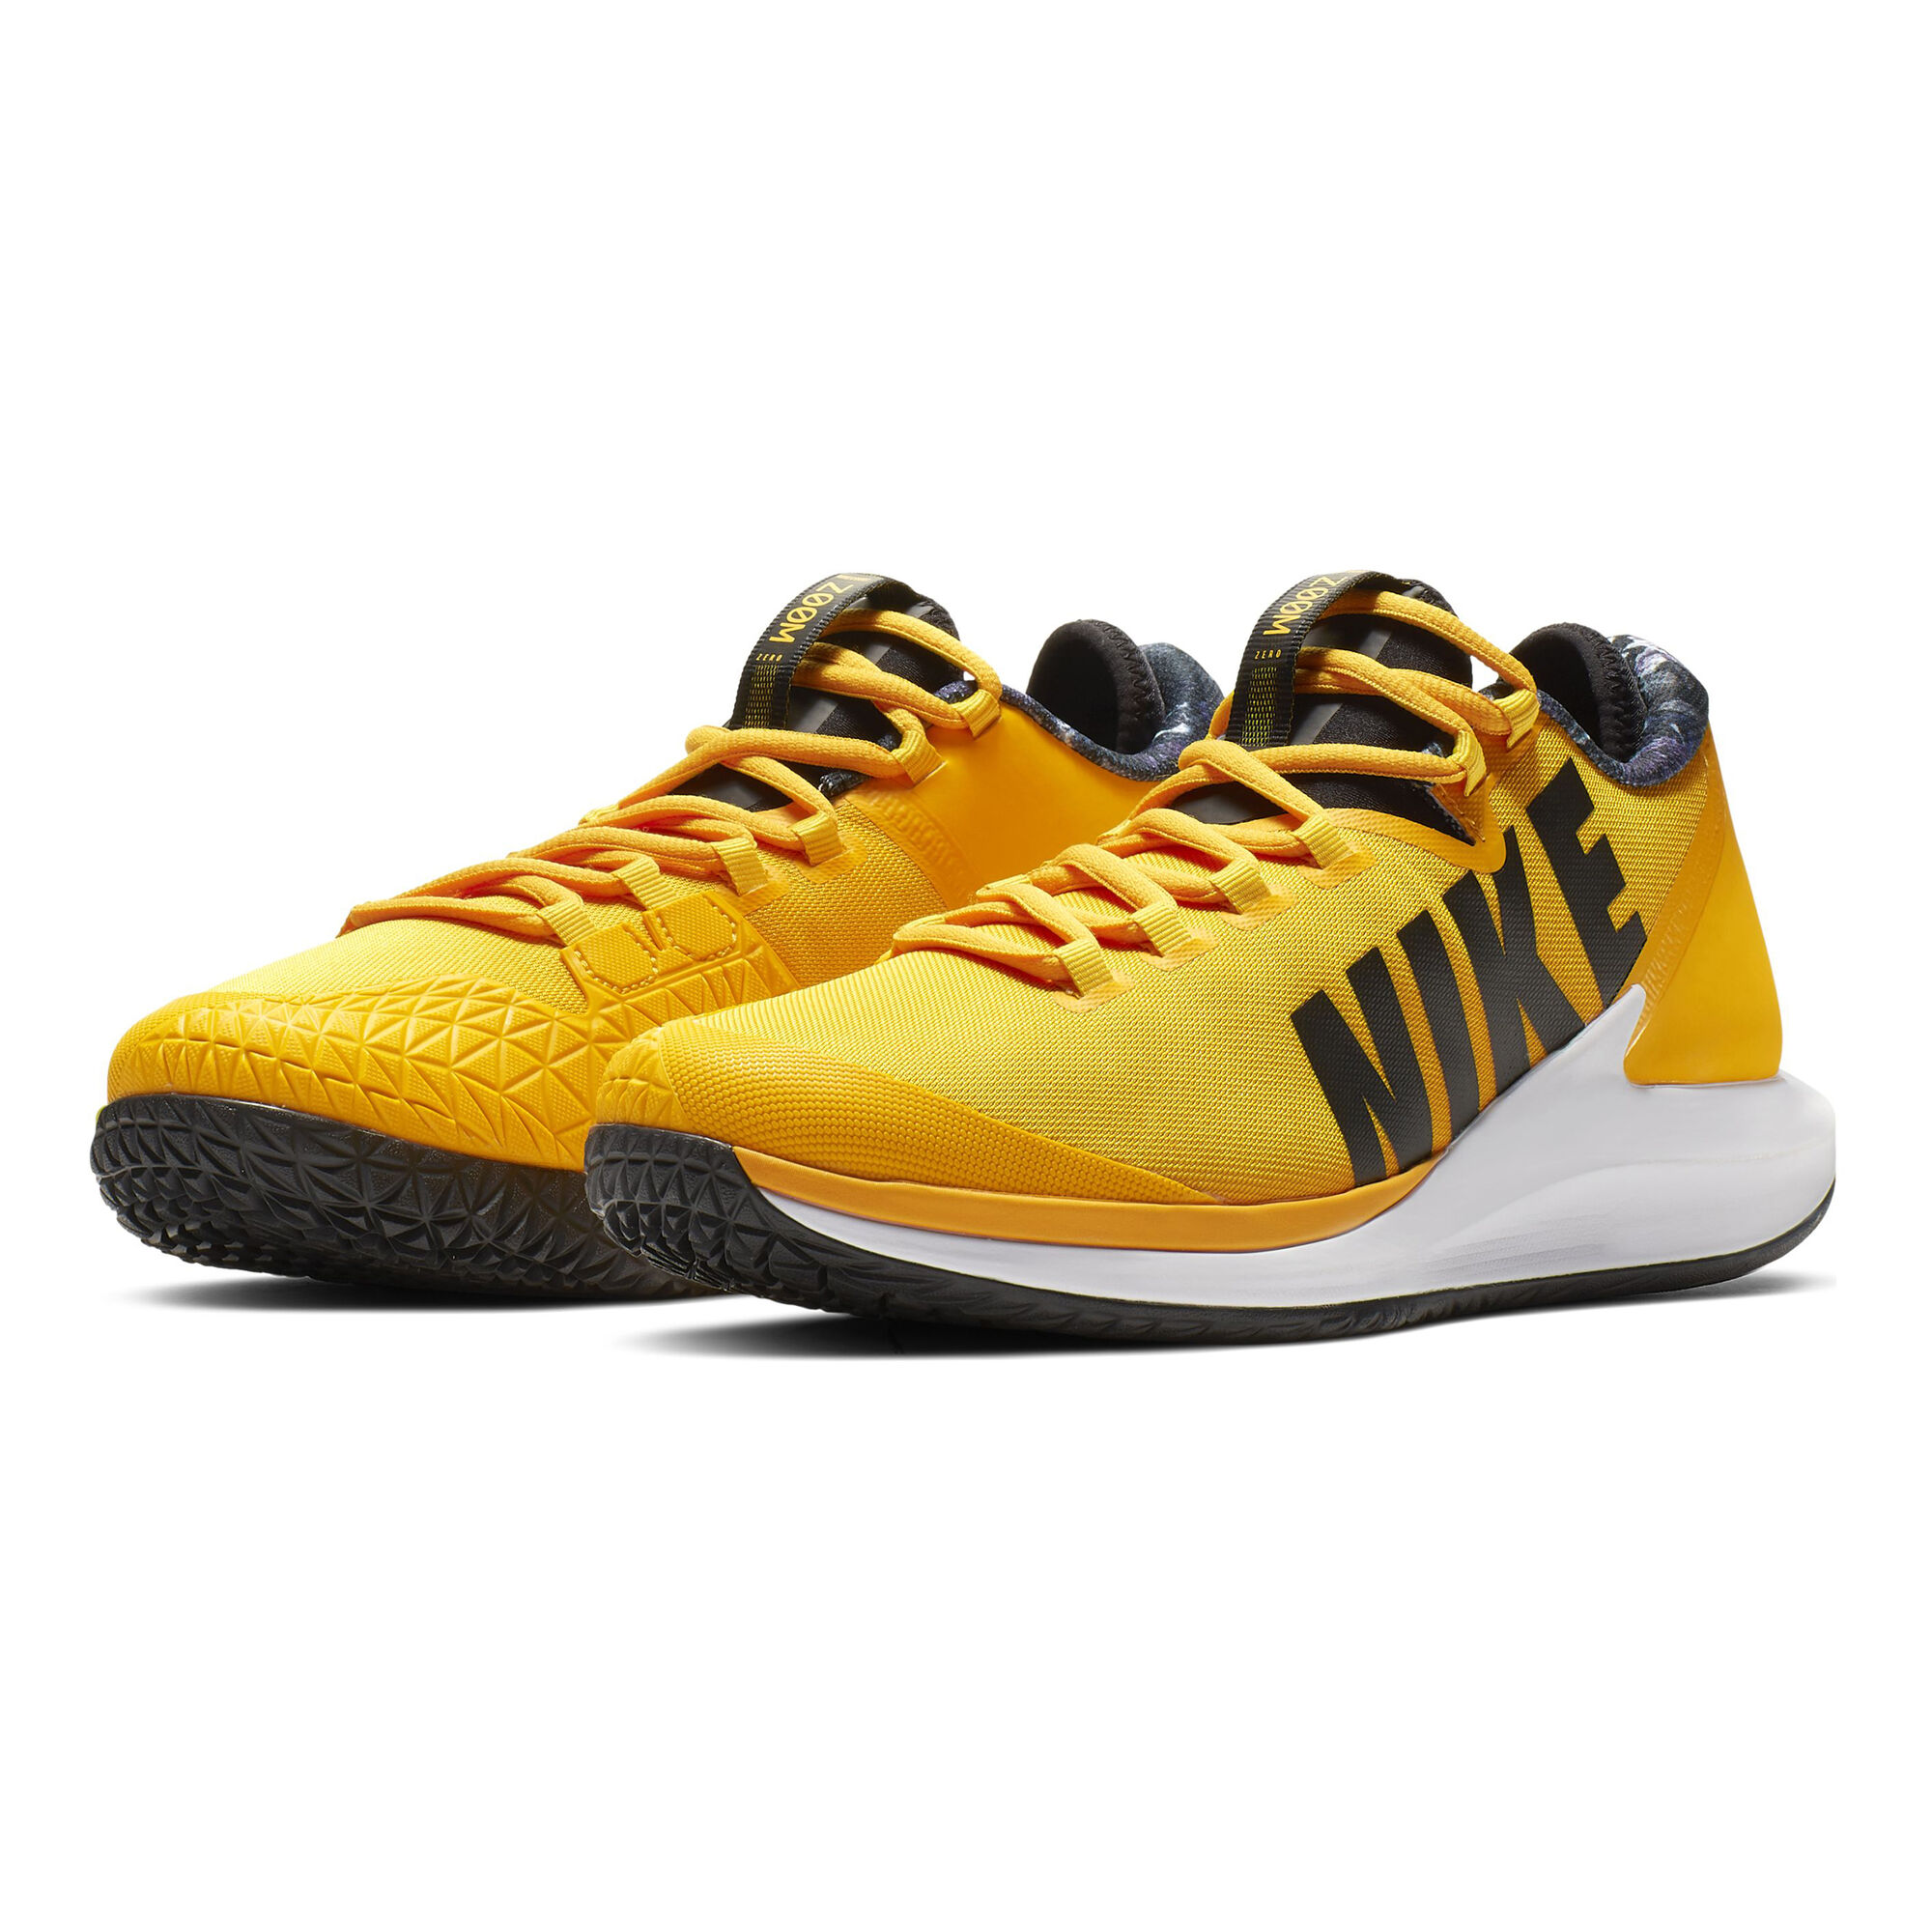 buy Nike Air Zoom Zero All Court Shoe Men - Golden Yellow, Black online ...